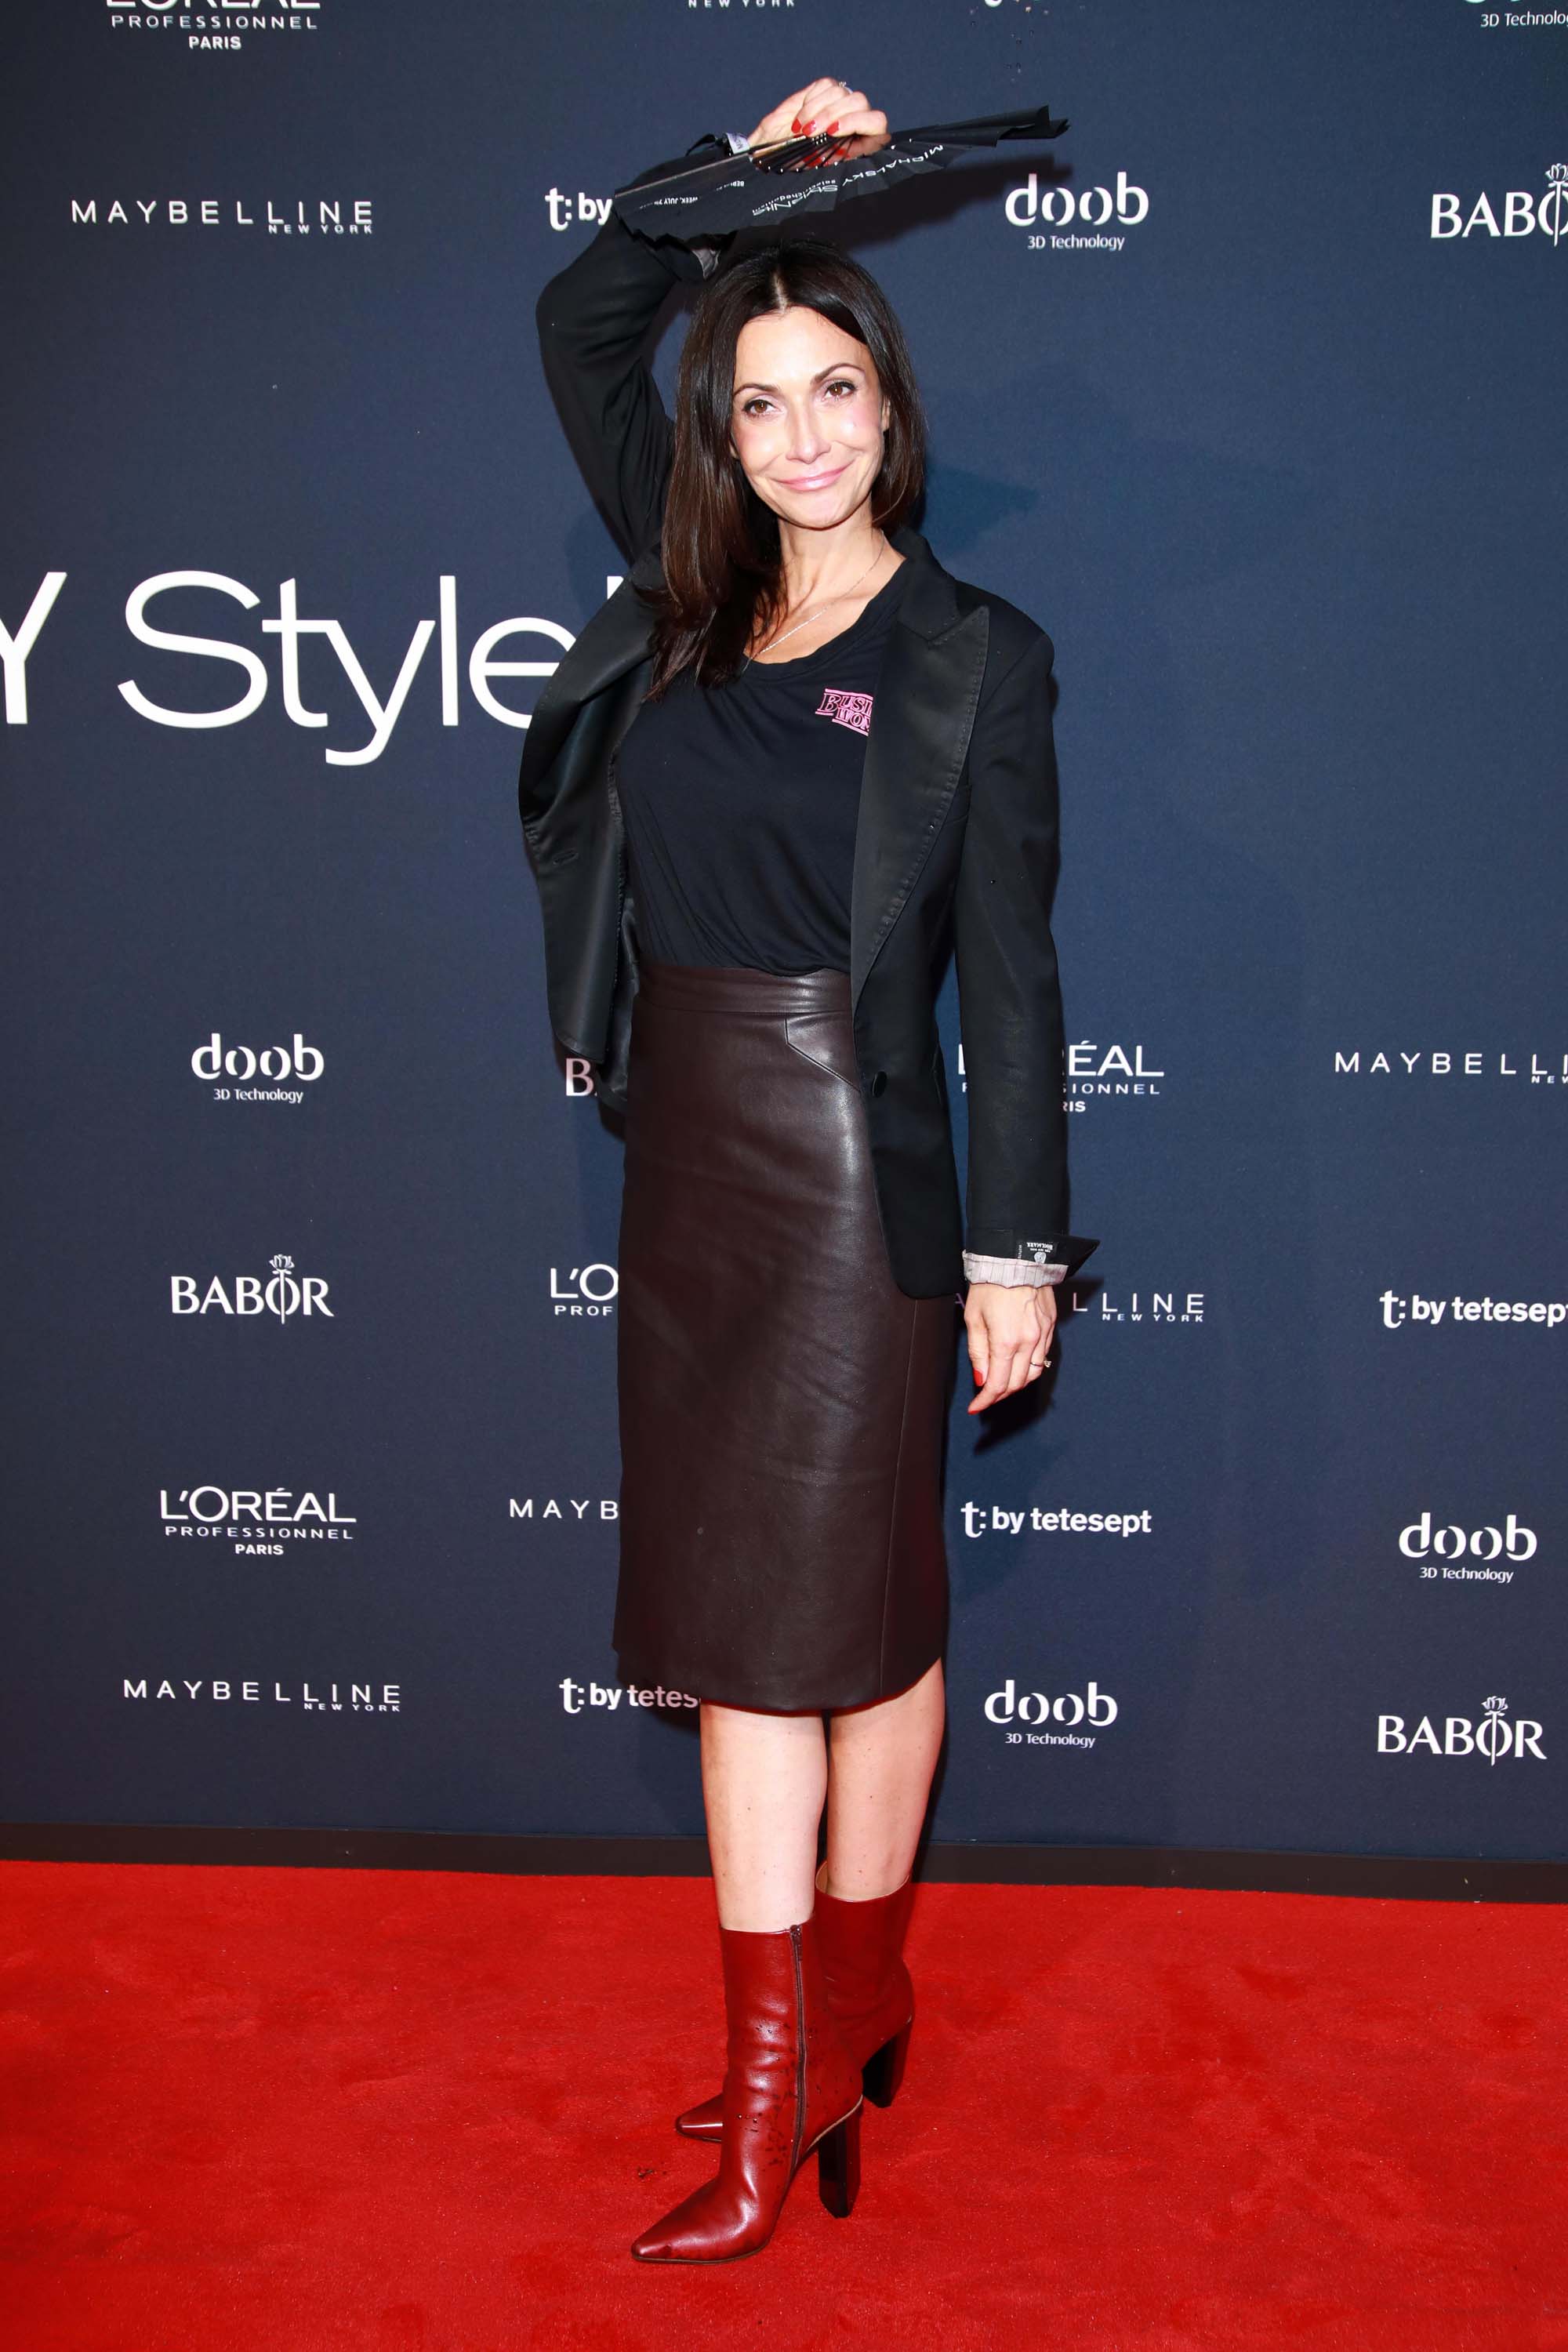 Anita Tillmann attends Michalsky StyleNite bei der Mercedes-Benz Fashion Week